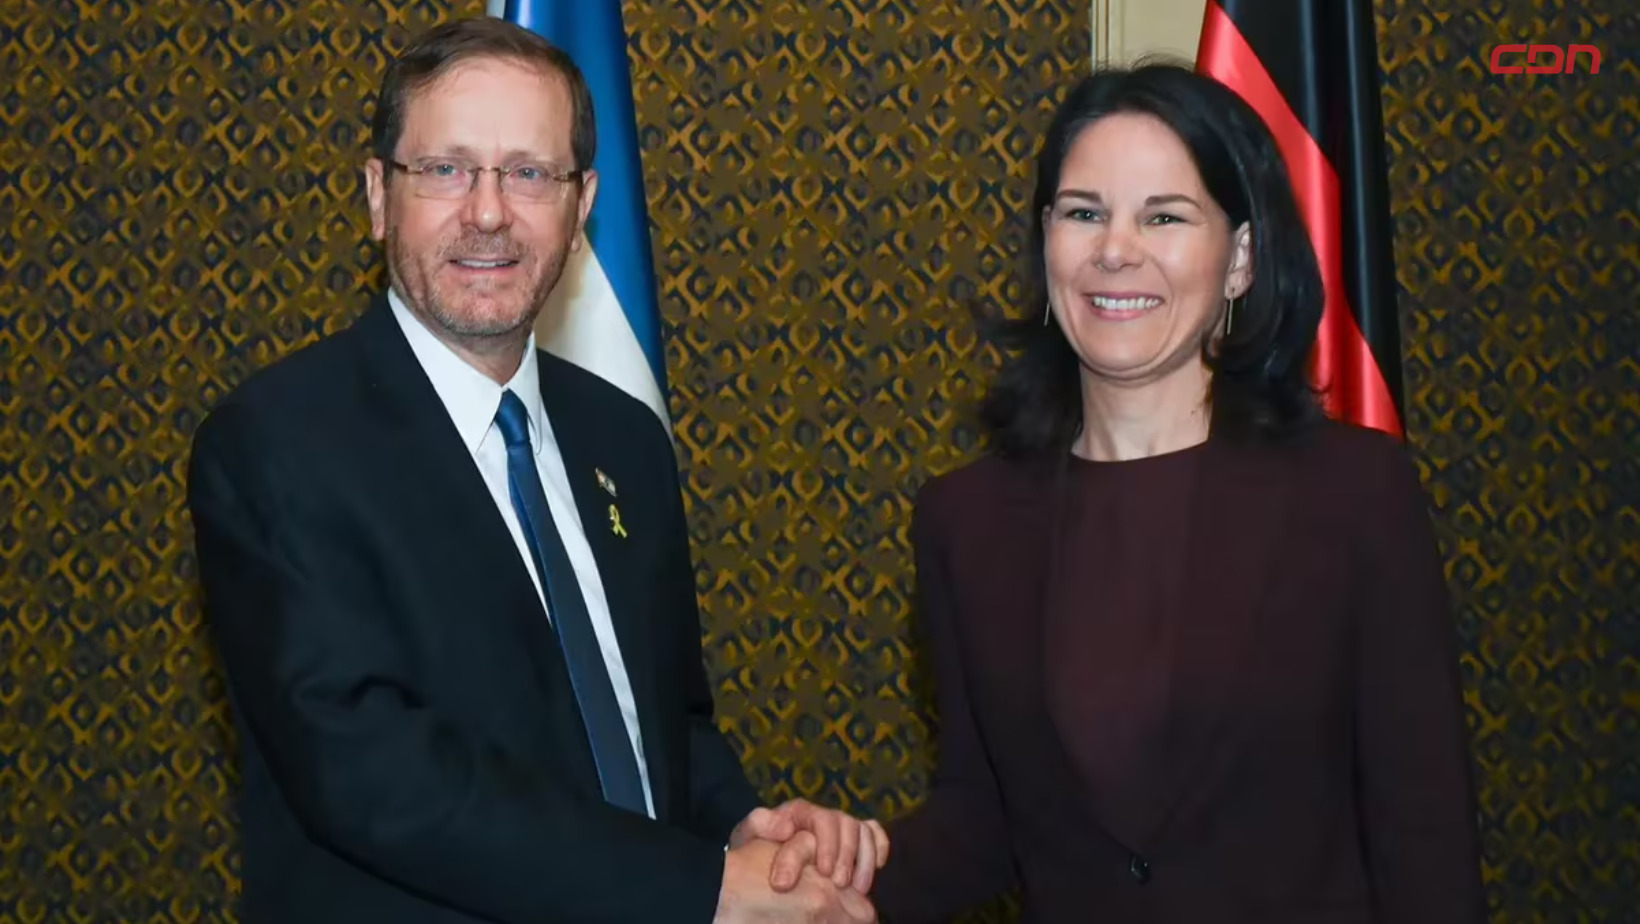 El presidente de Israel, Isaac Herzog y la ministra de Asuntos Exteriores de Alemania, Annalena Baerbock. Foto: Fuente externa